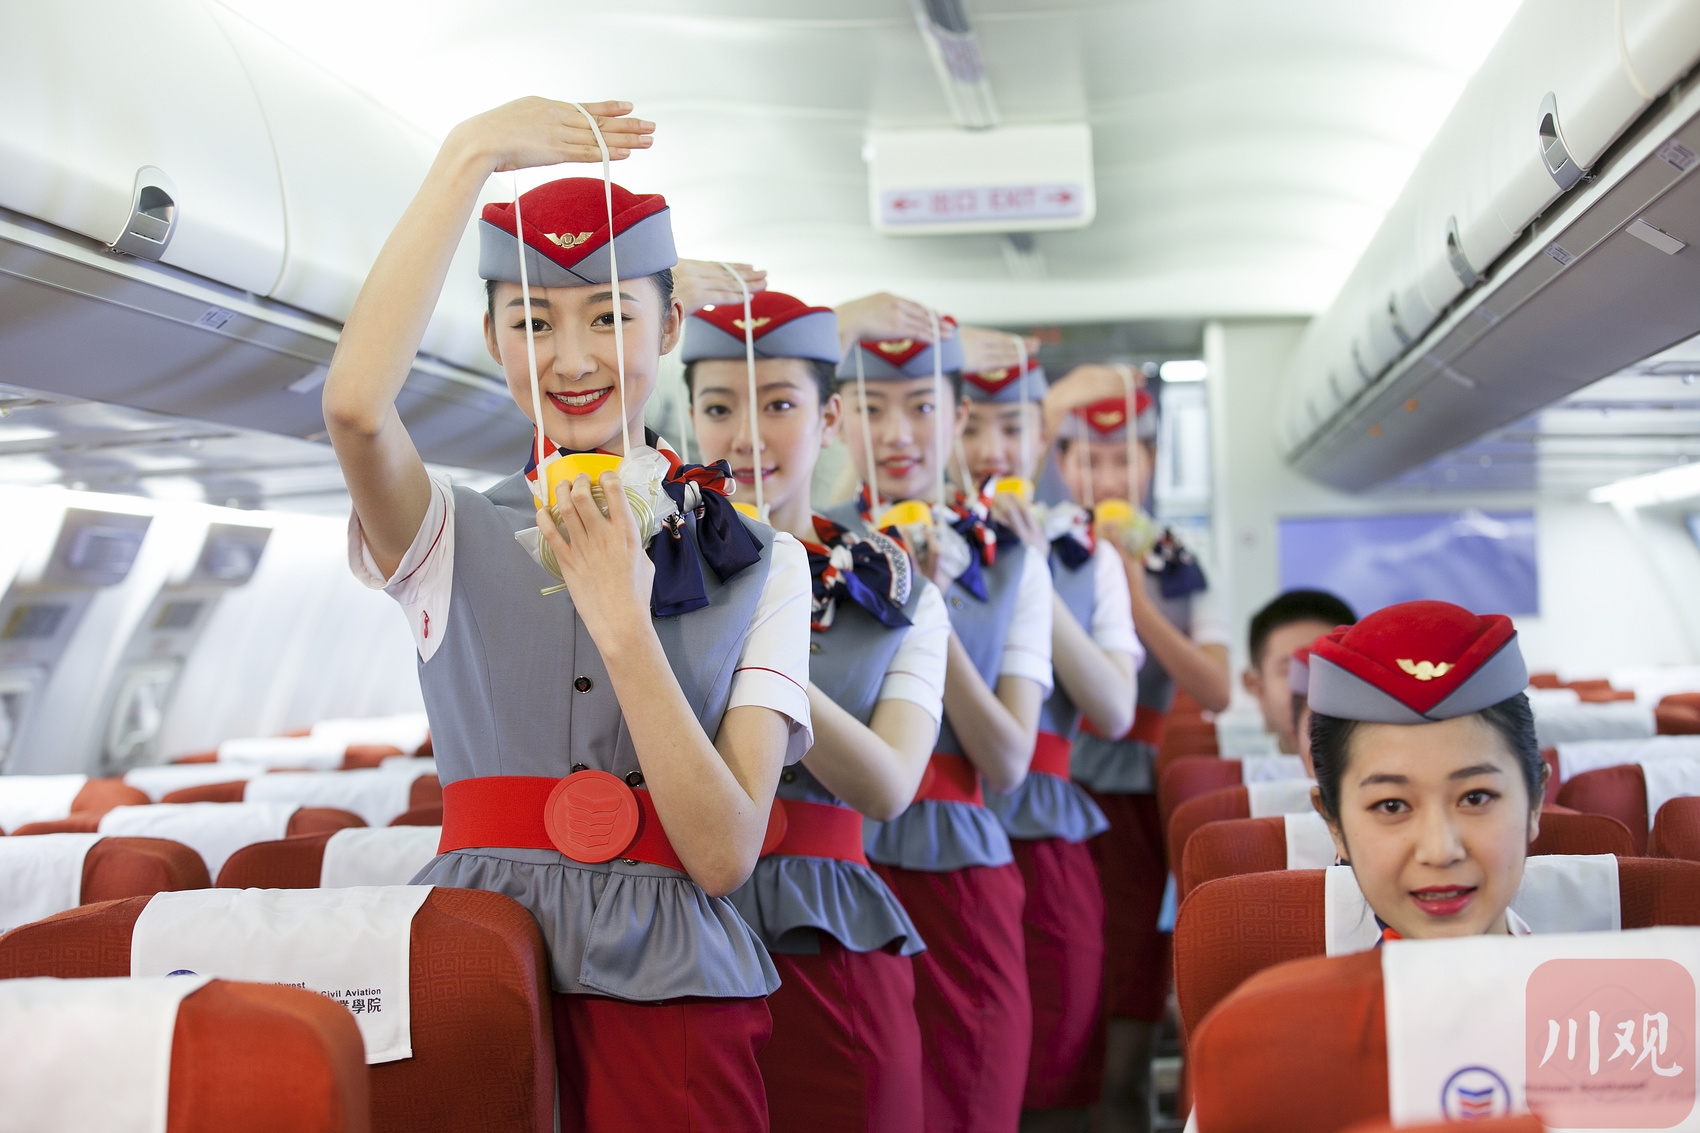 八十九十年代，中国西南航空公司空乘人员形象老照片5张，早期空姐照片都有专业级底片-价格:200元-se90012221-老照片-零售-7788收藏__收藏热线